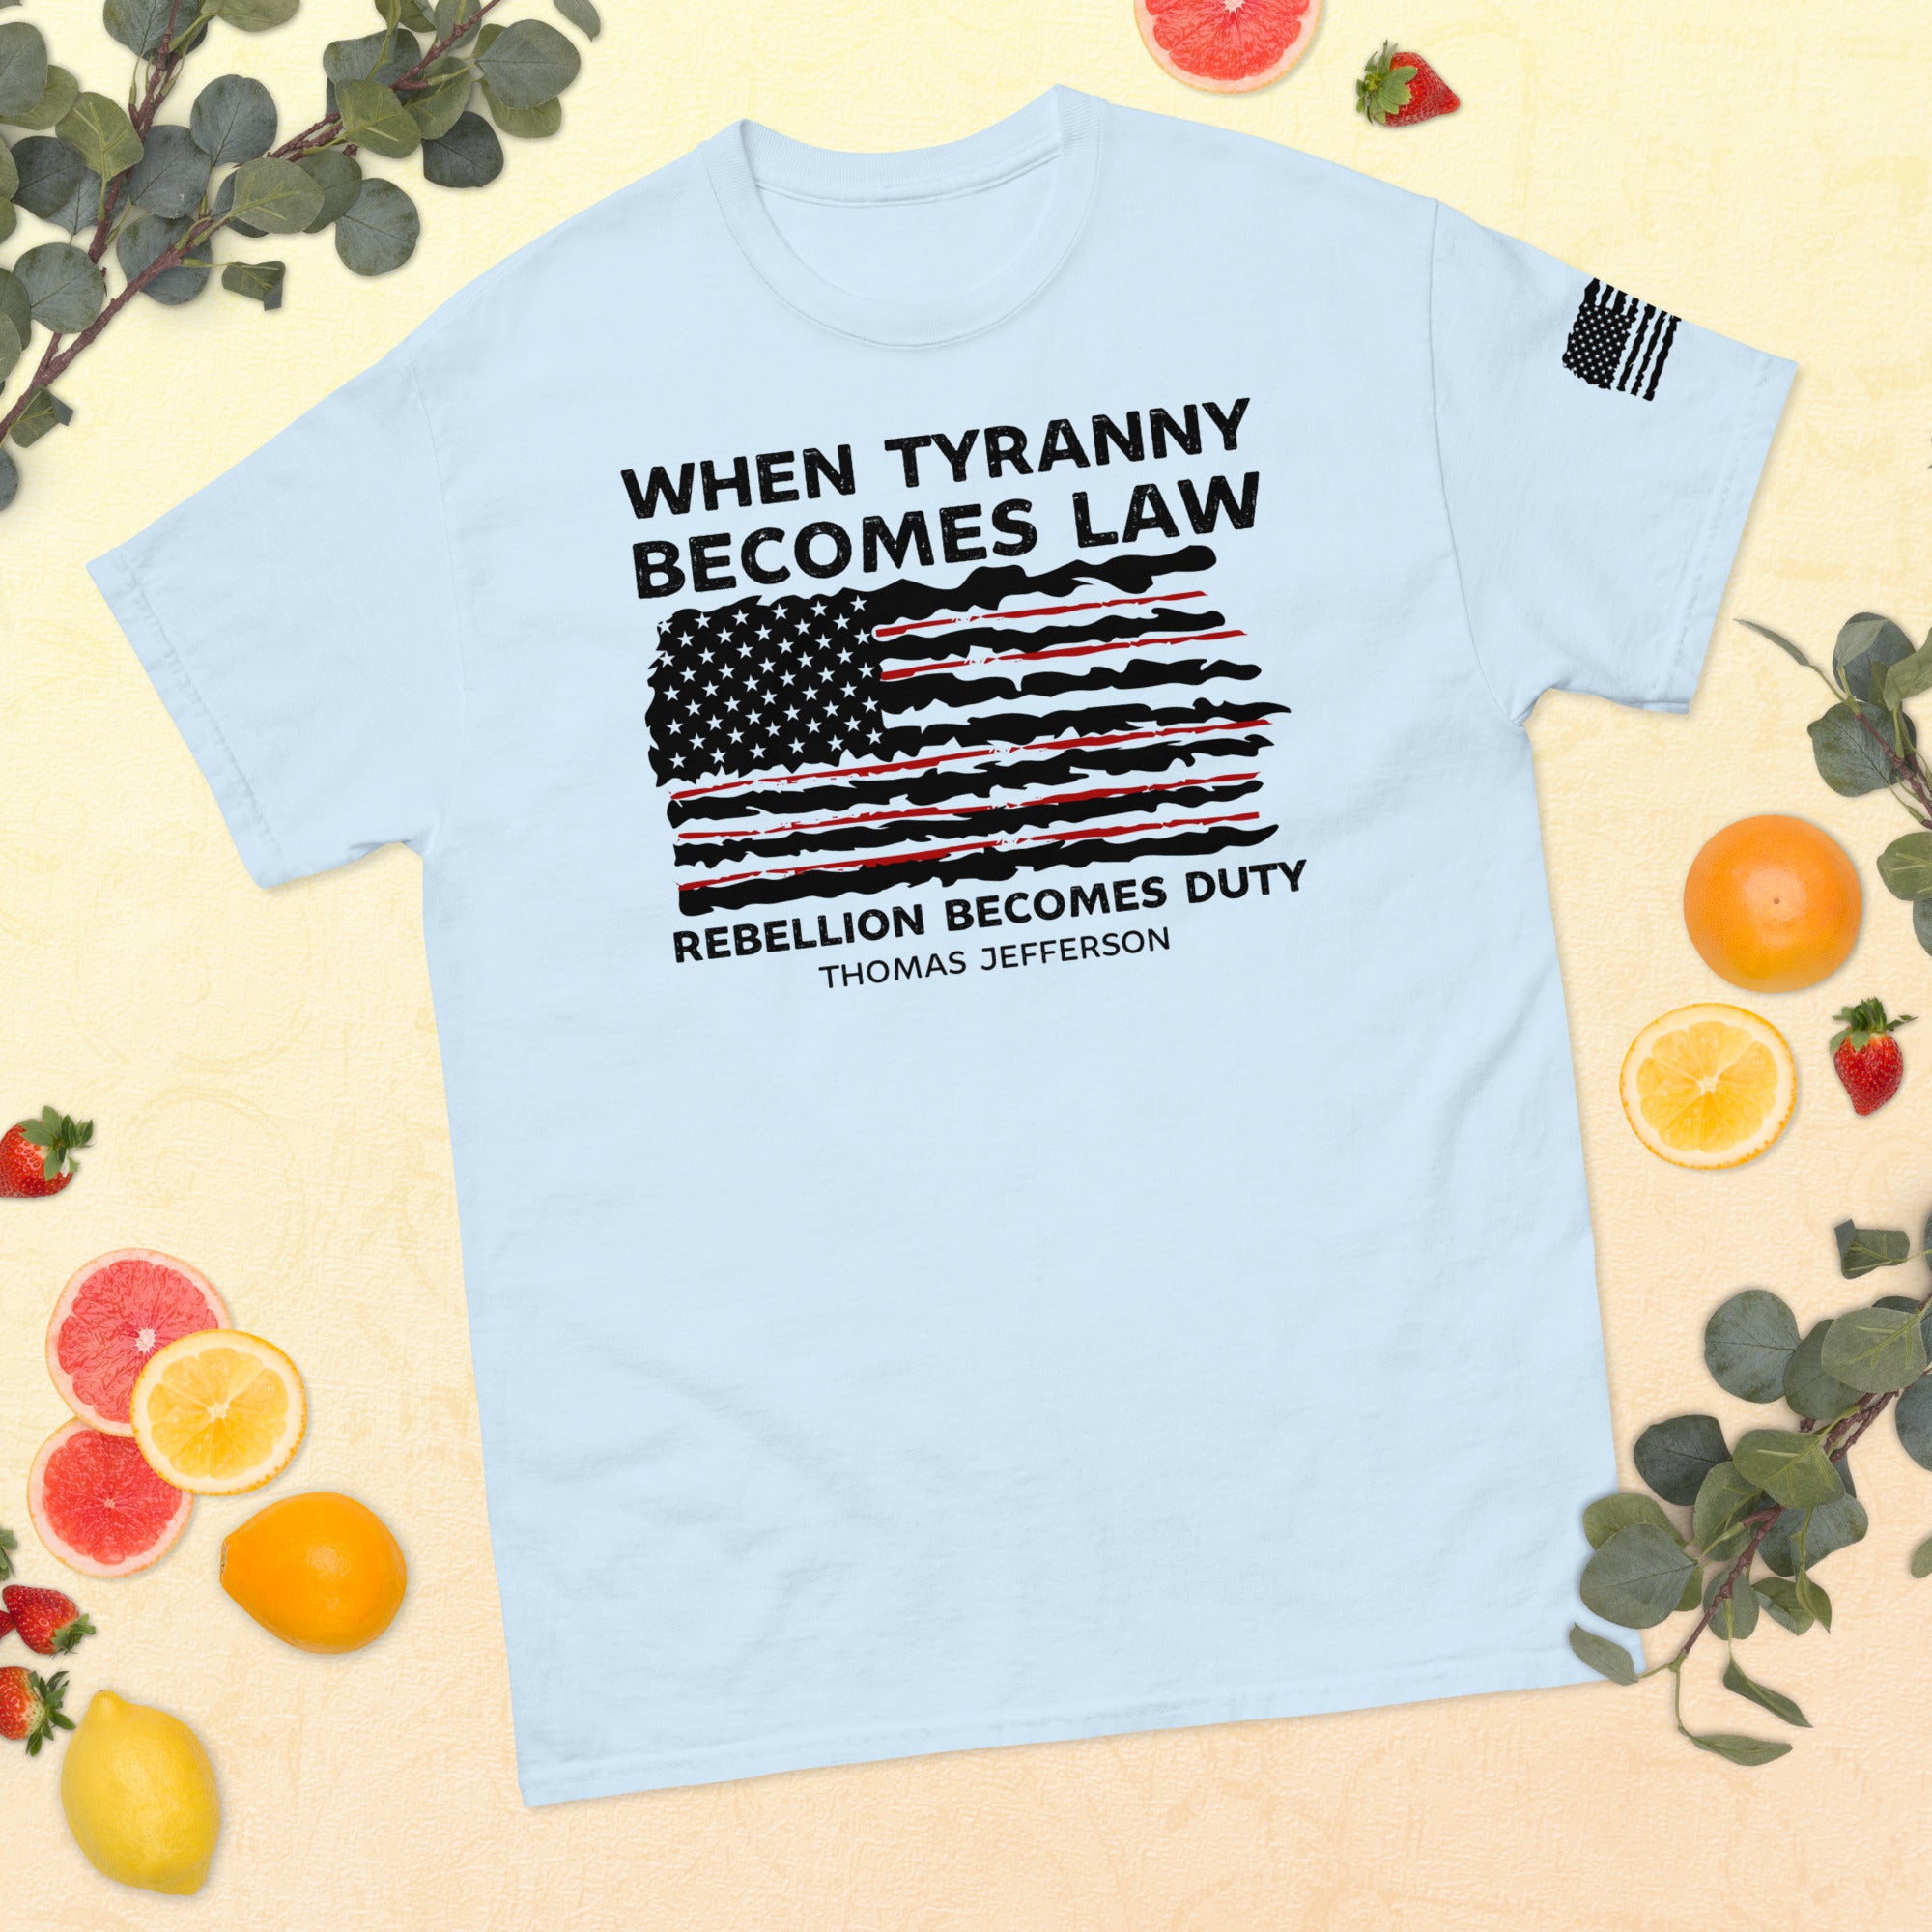 Cuando la tiranía se convierte en ley, la rebelión se convierte en deber, camisa de 1776, camisa de Thomas Jefferson, camisas políticas, camisa de tiranía, camisa de rebelión